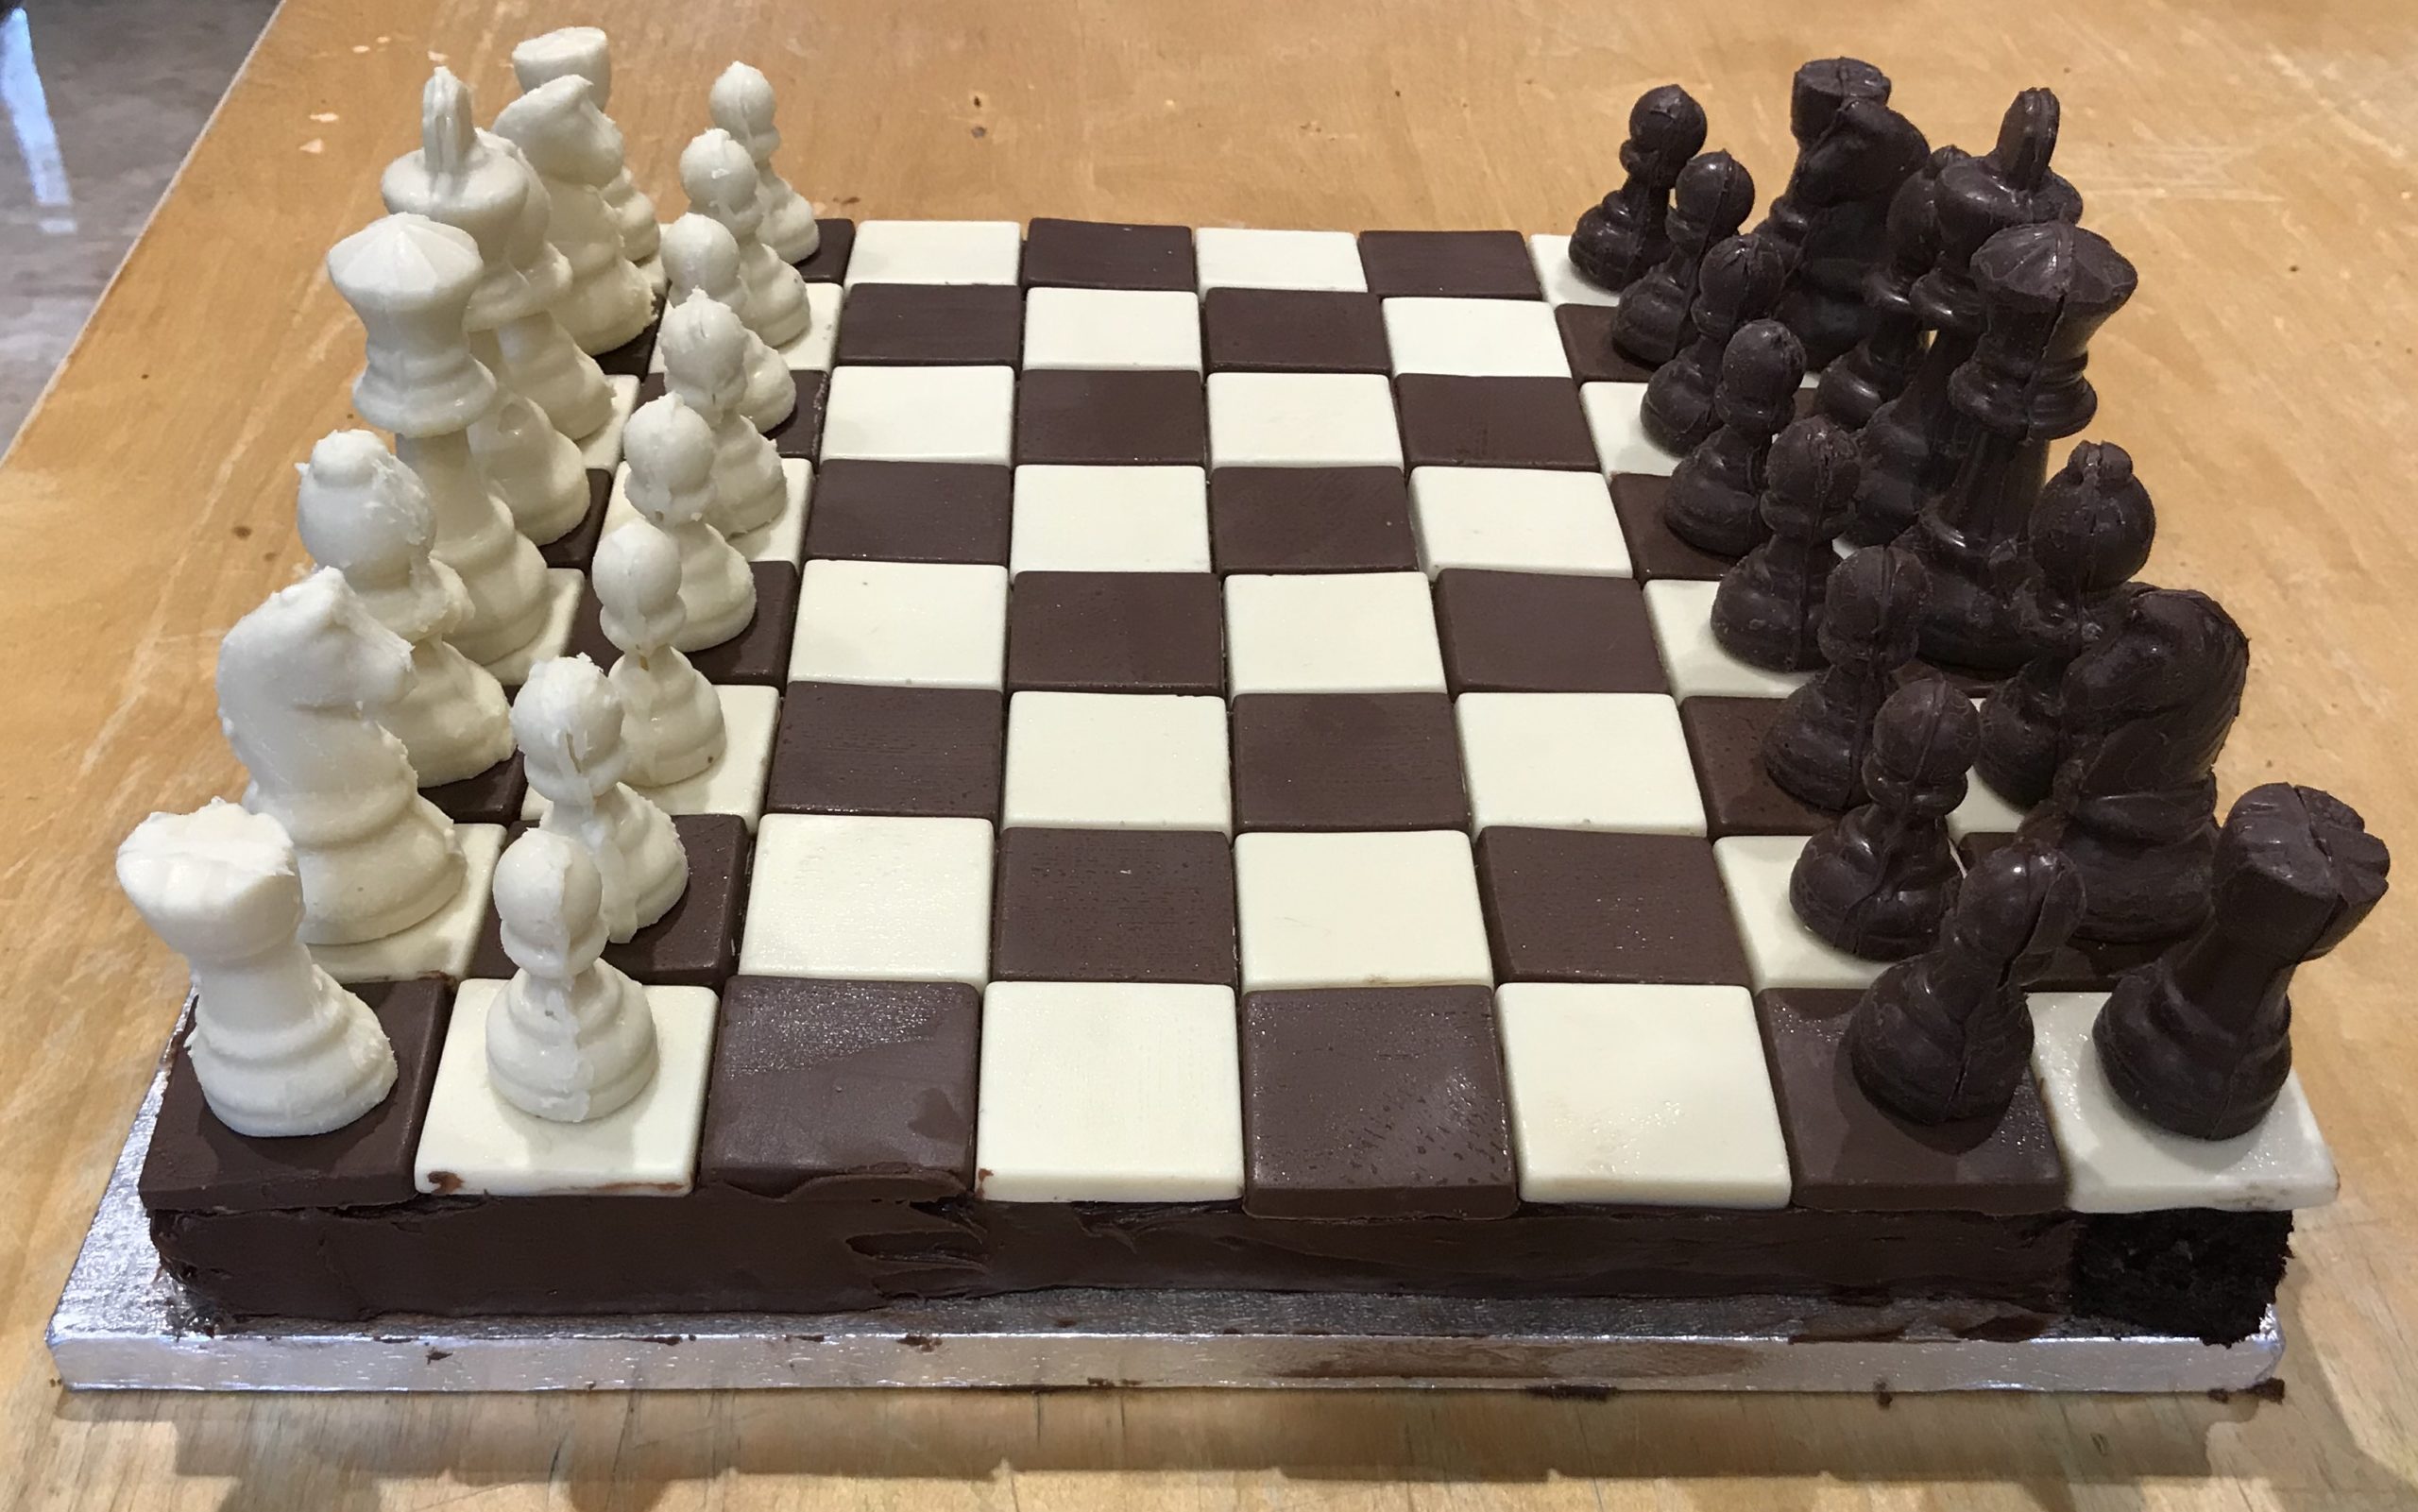 Chess Cake - Decorated Cake by Lace Cakes Swindon - CakesDecor